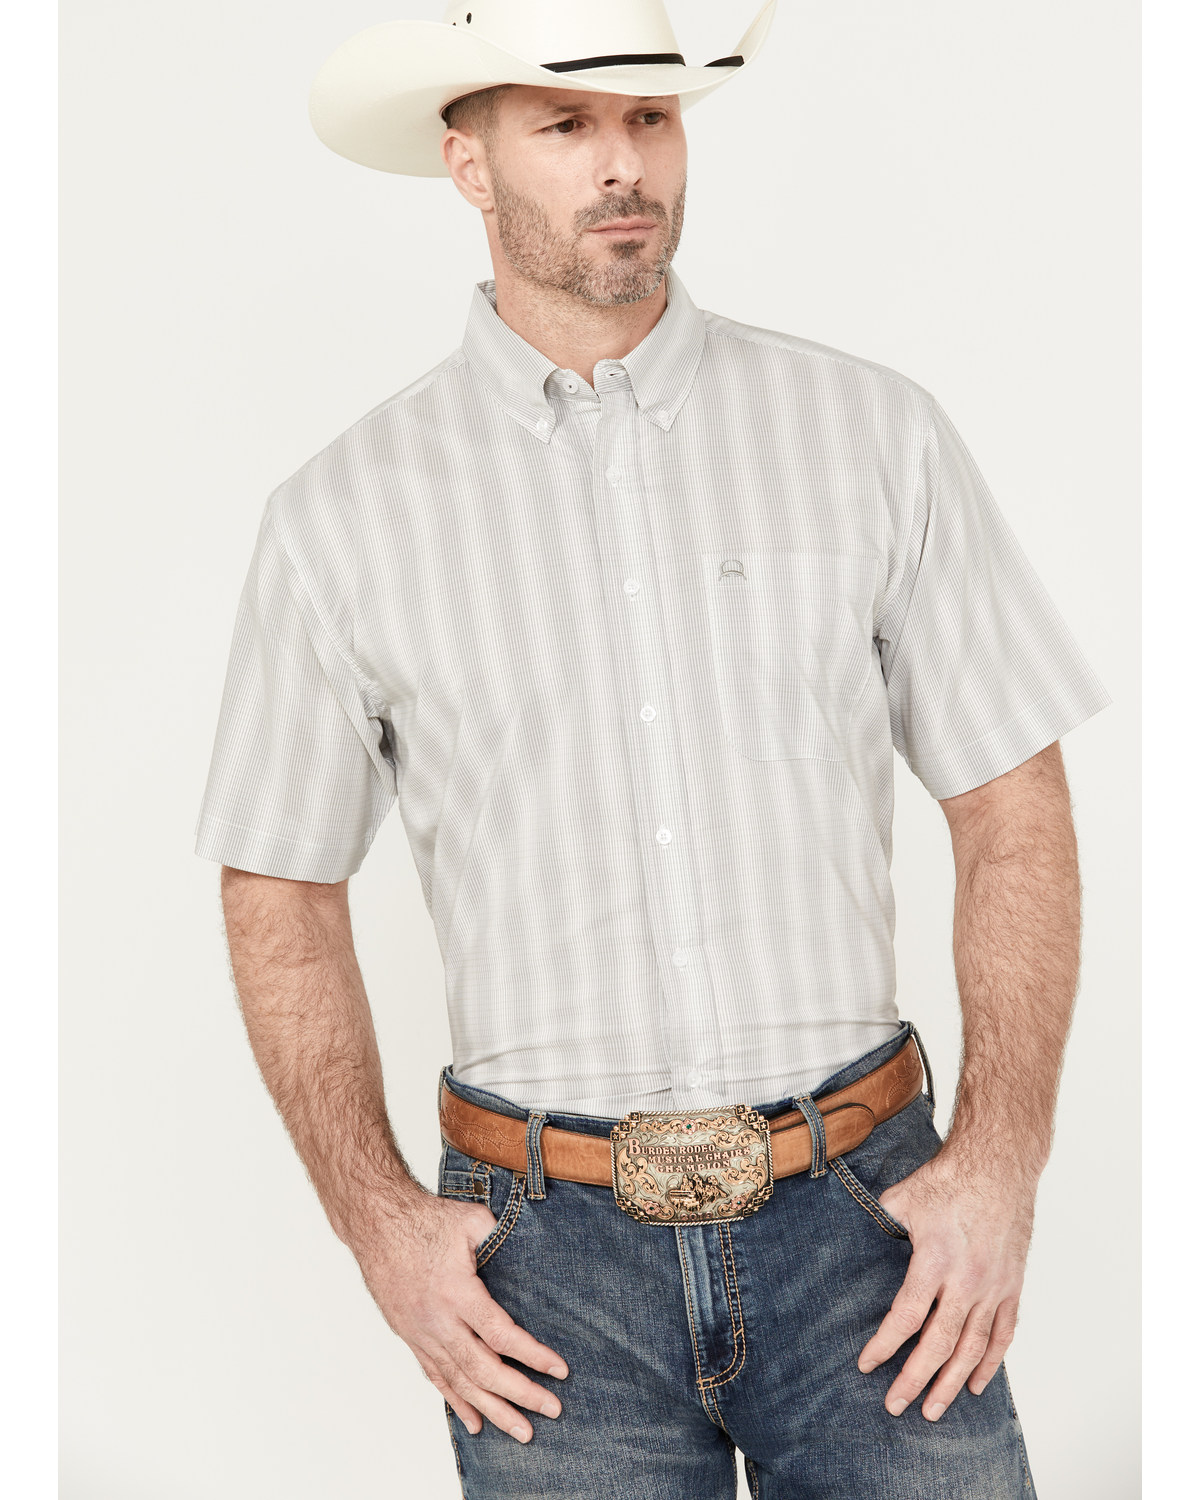 Cinch Men's ARENAFLEX Short Sleeve Button Down Western Shirt